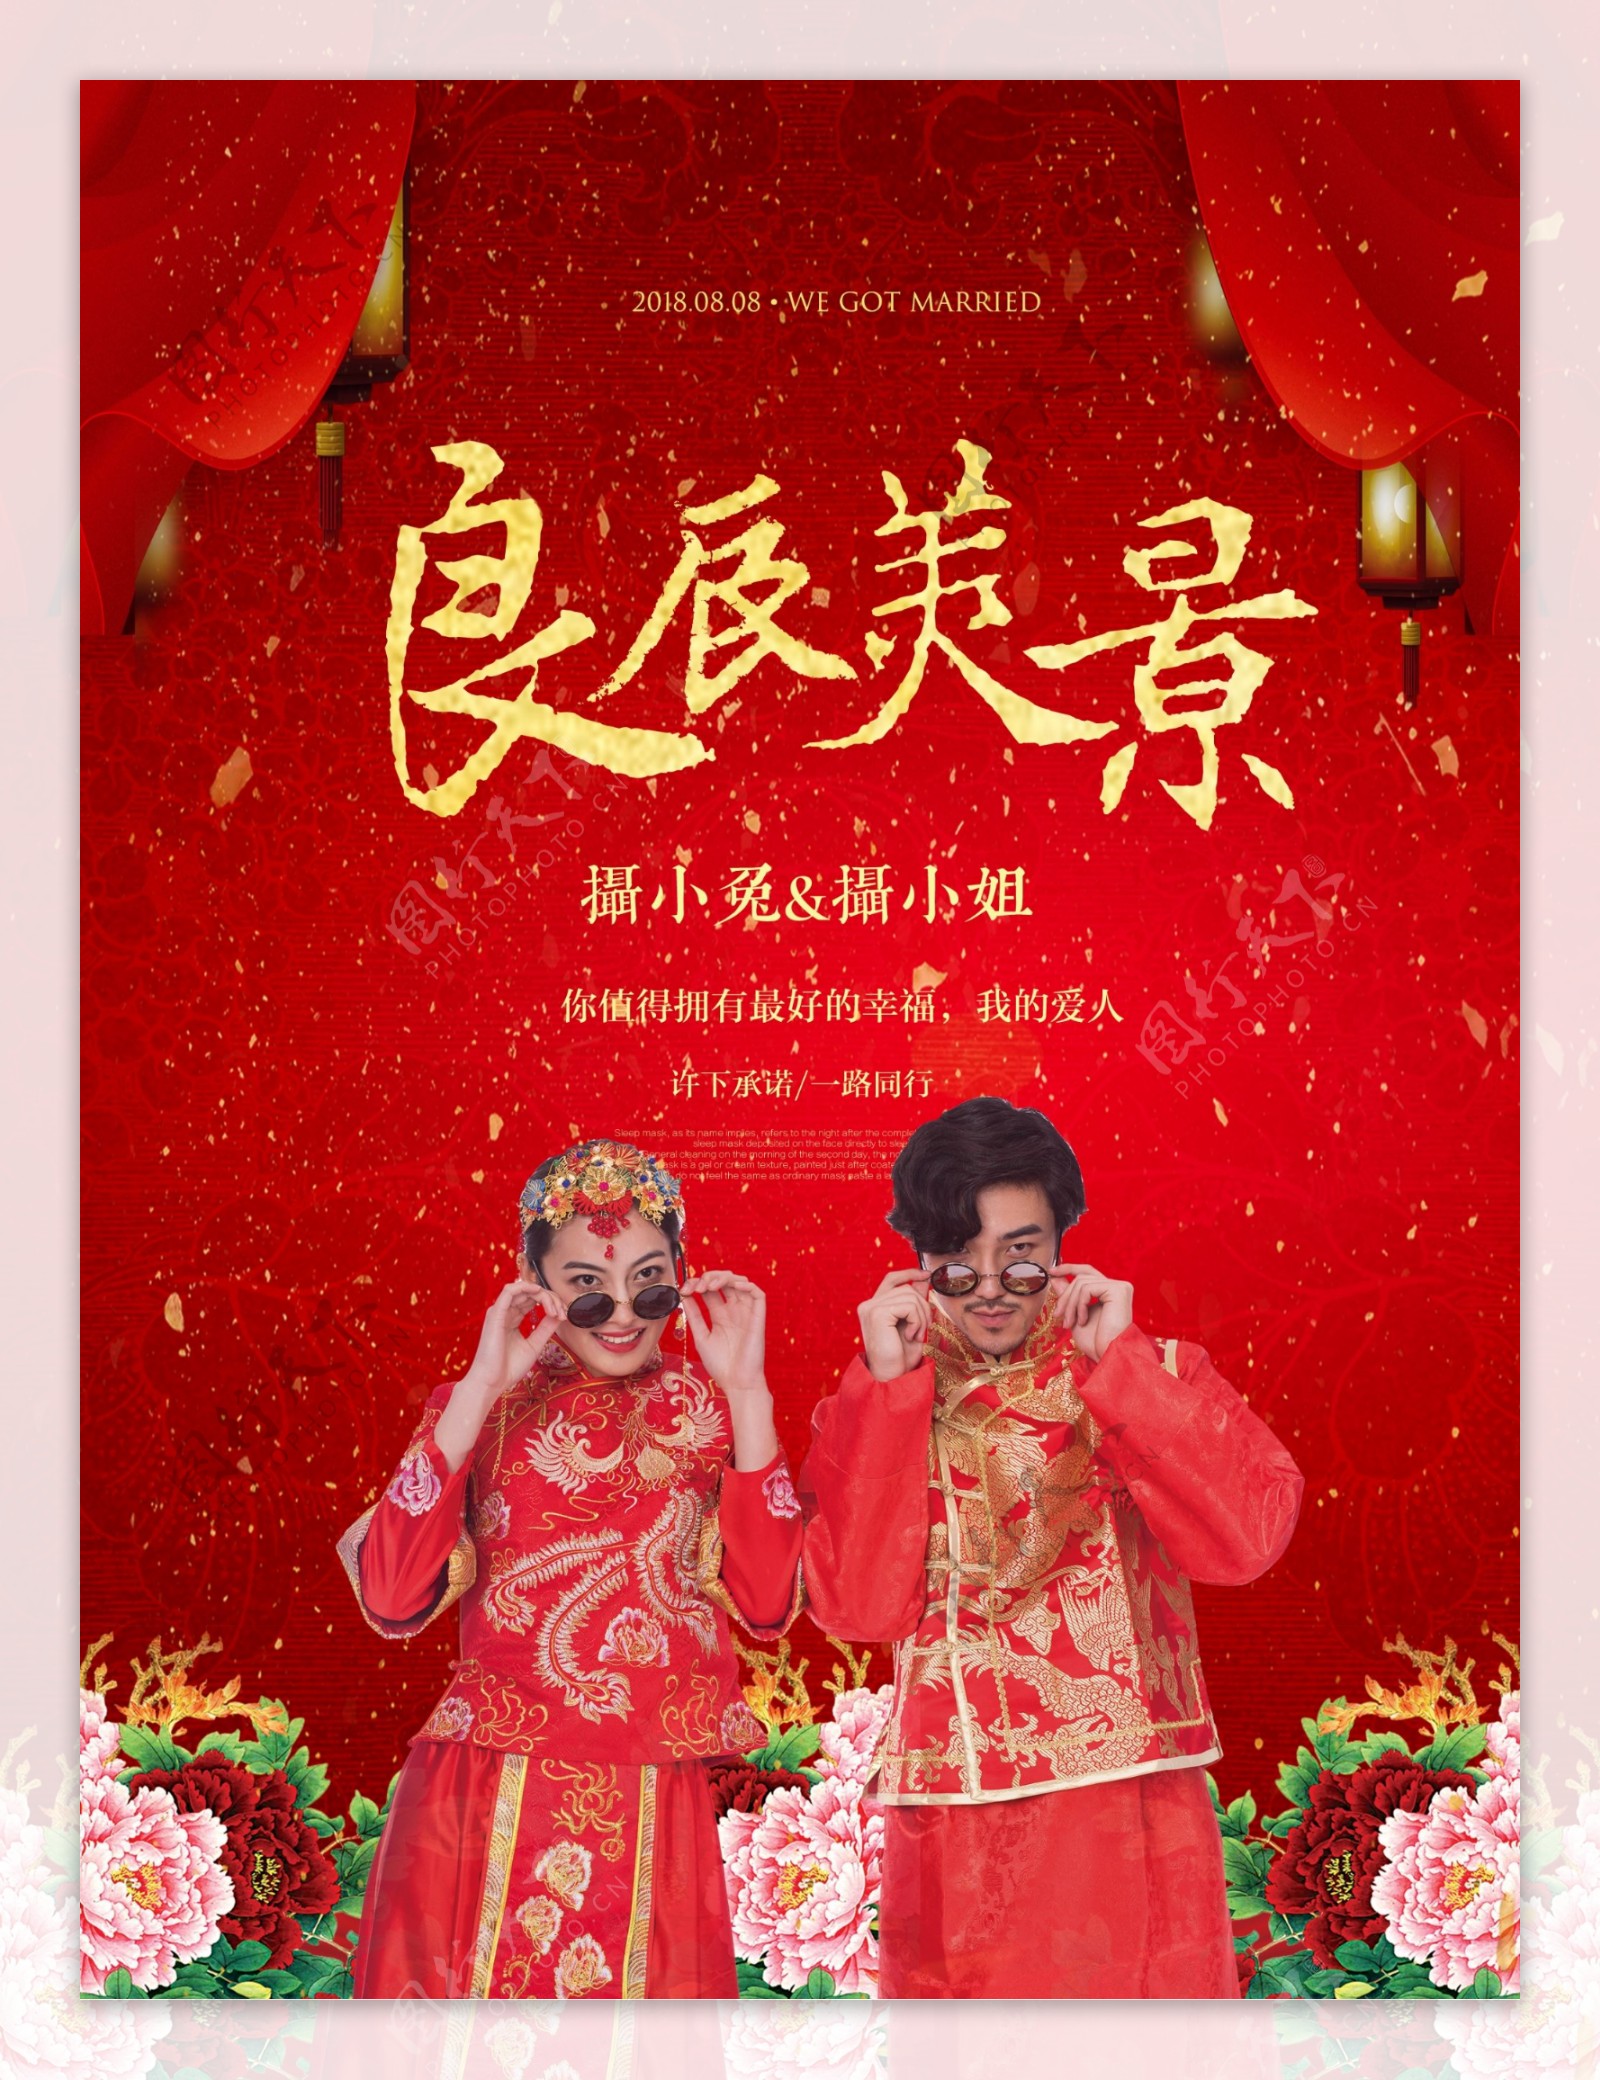 良辰美景中国风结婚海报